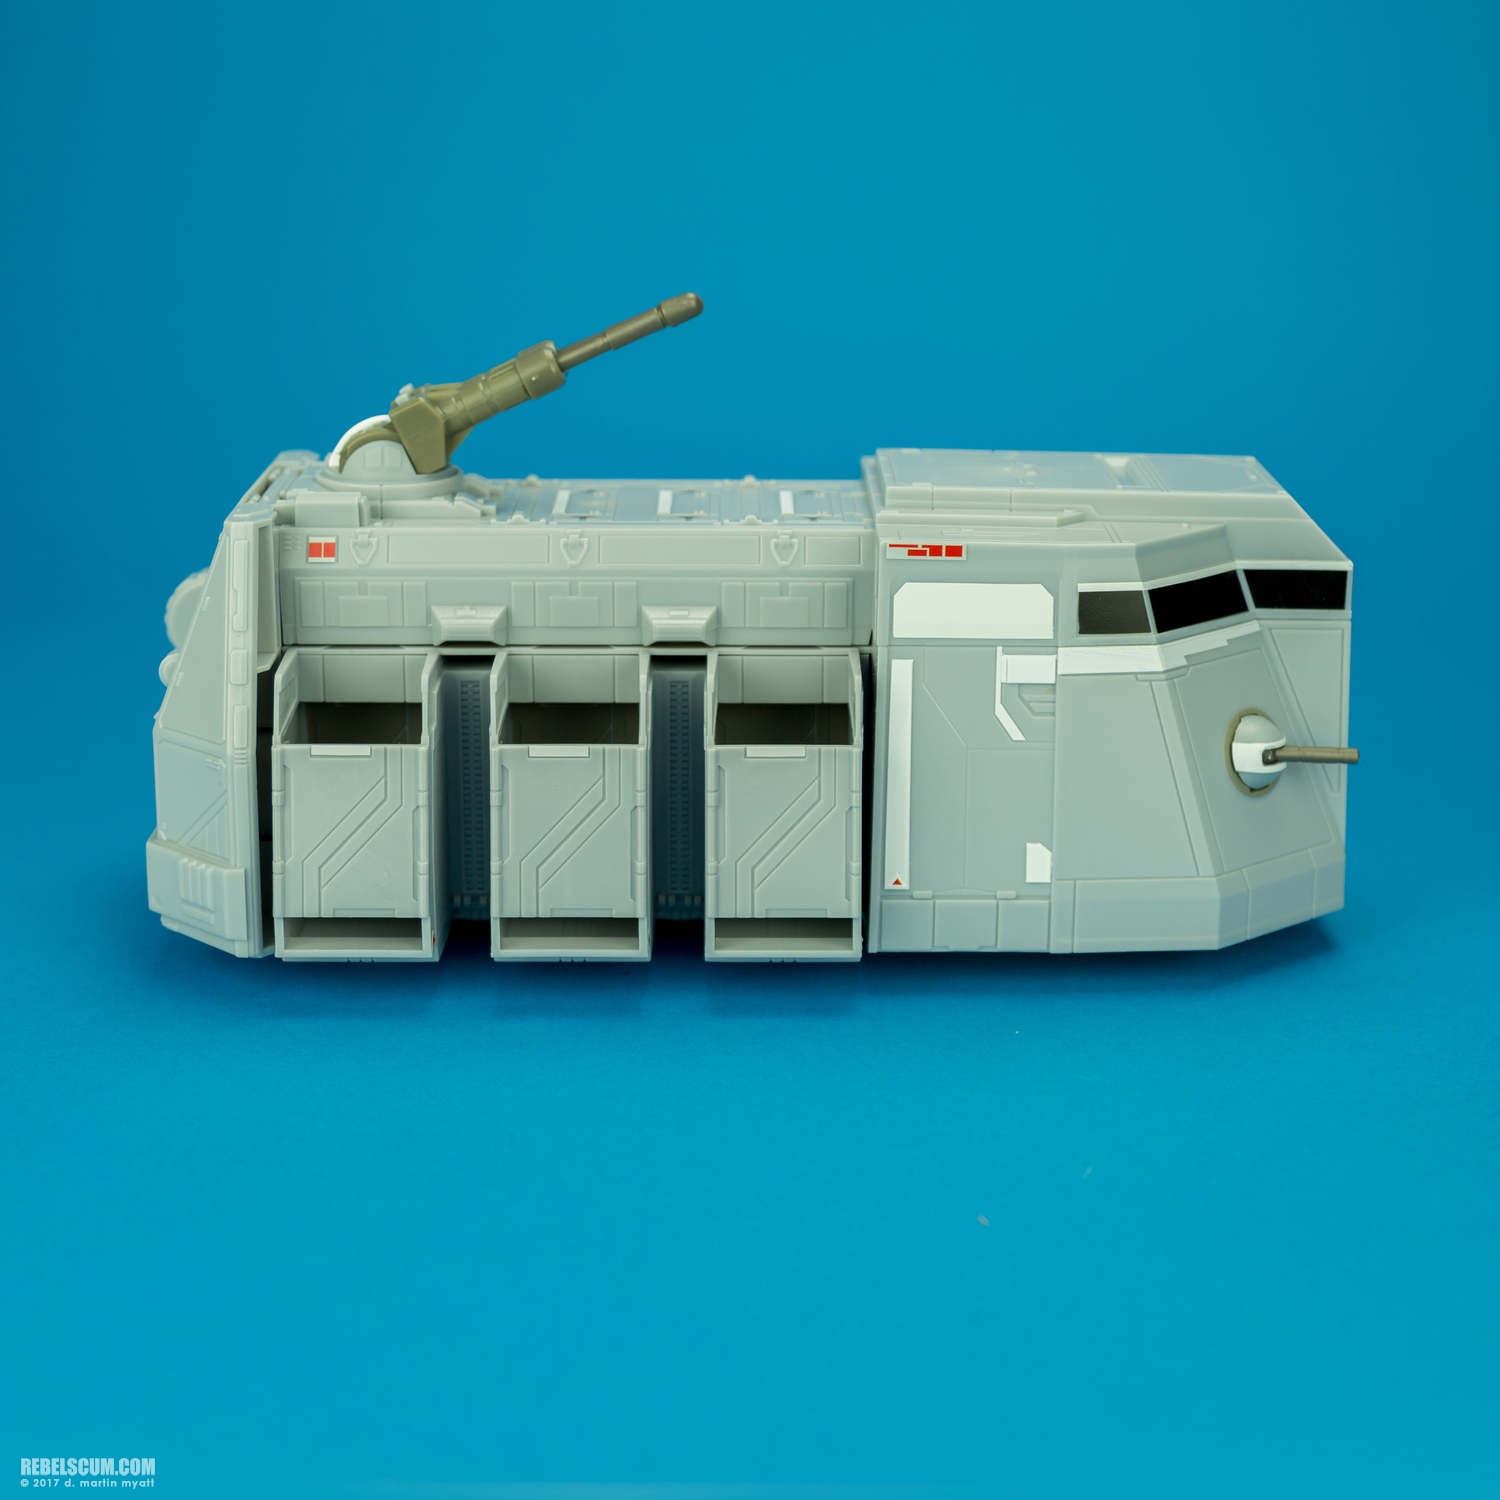 Imperial-Troop-Transport-Star-Wars-Rebels-Vehicle-Hasbro-002.jpg